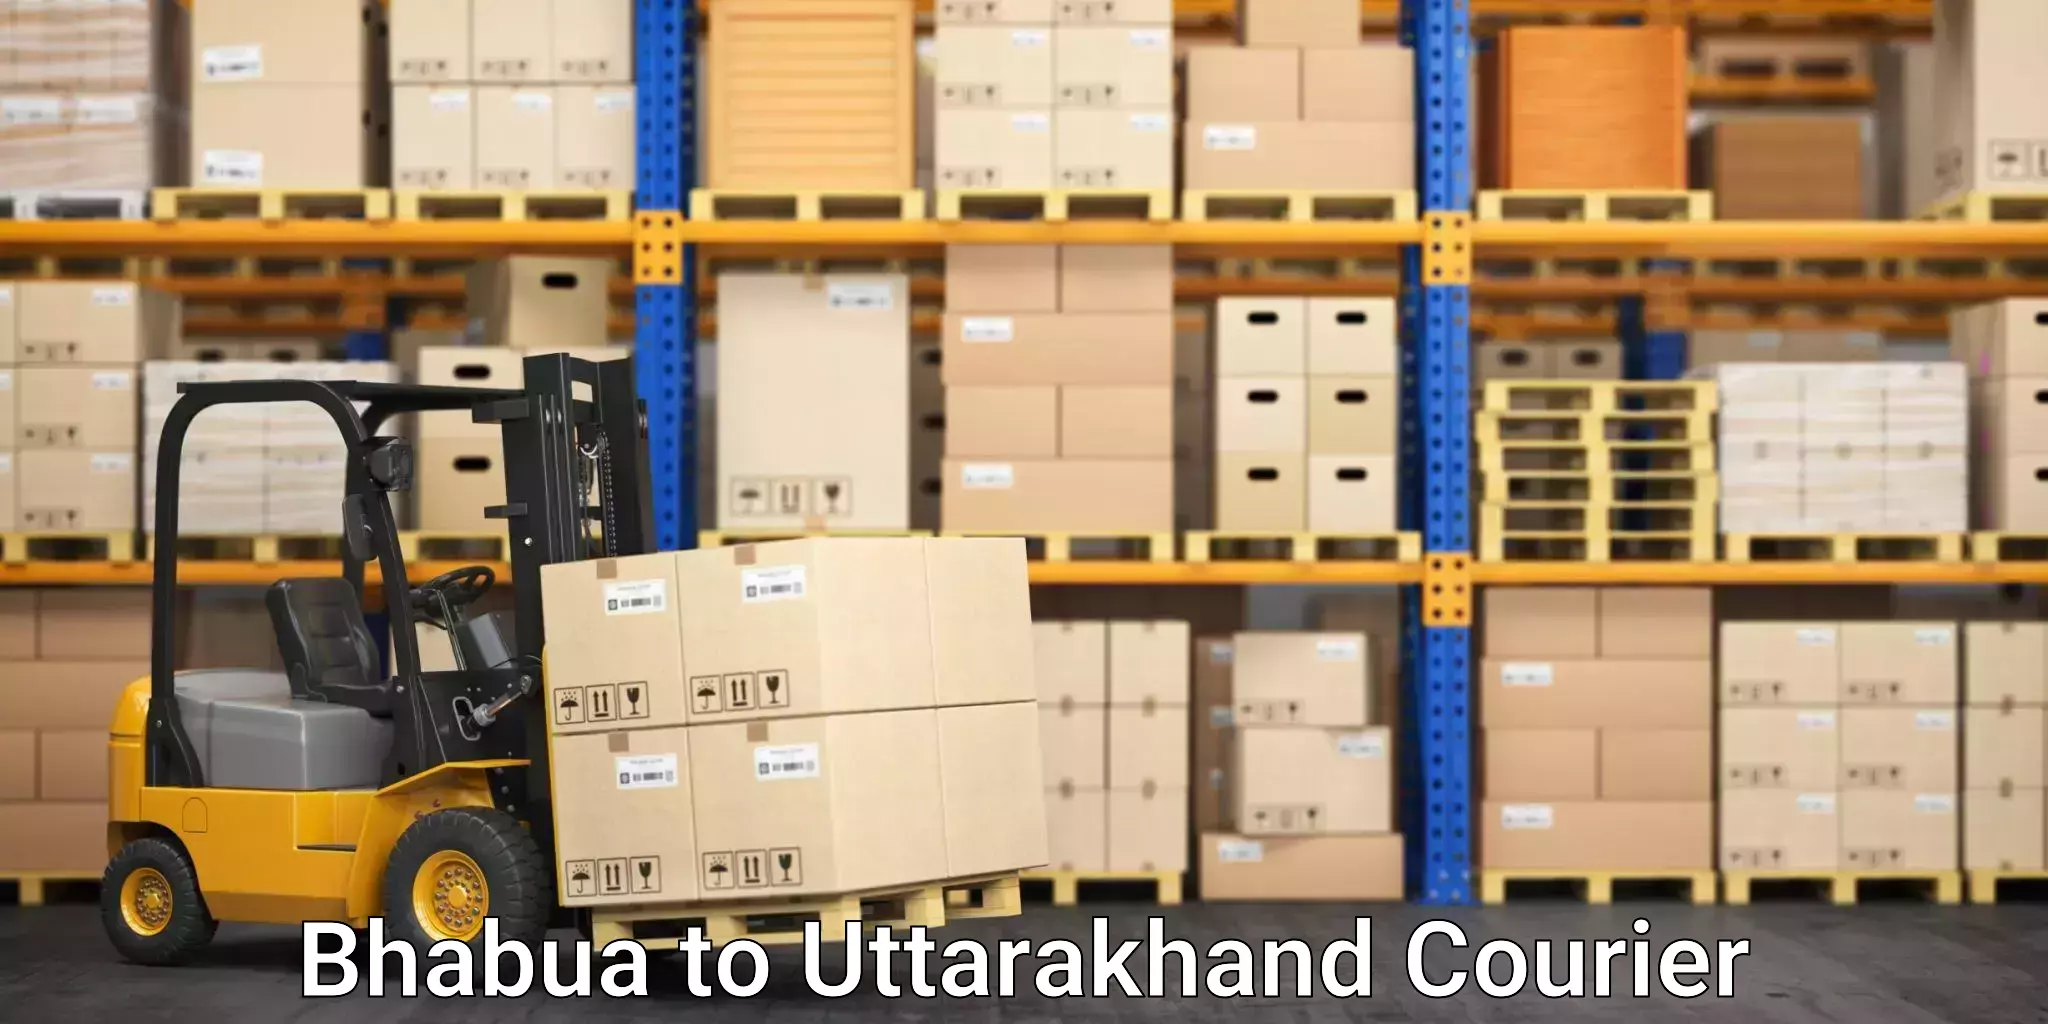 Reliable moving assistance Bhabua to Uttarakhand